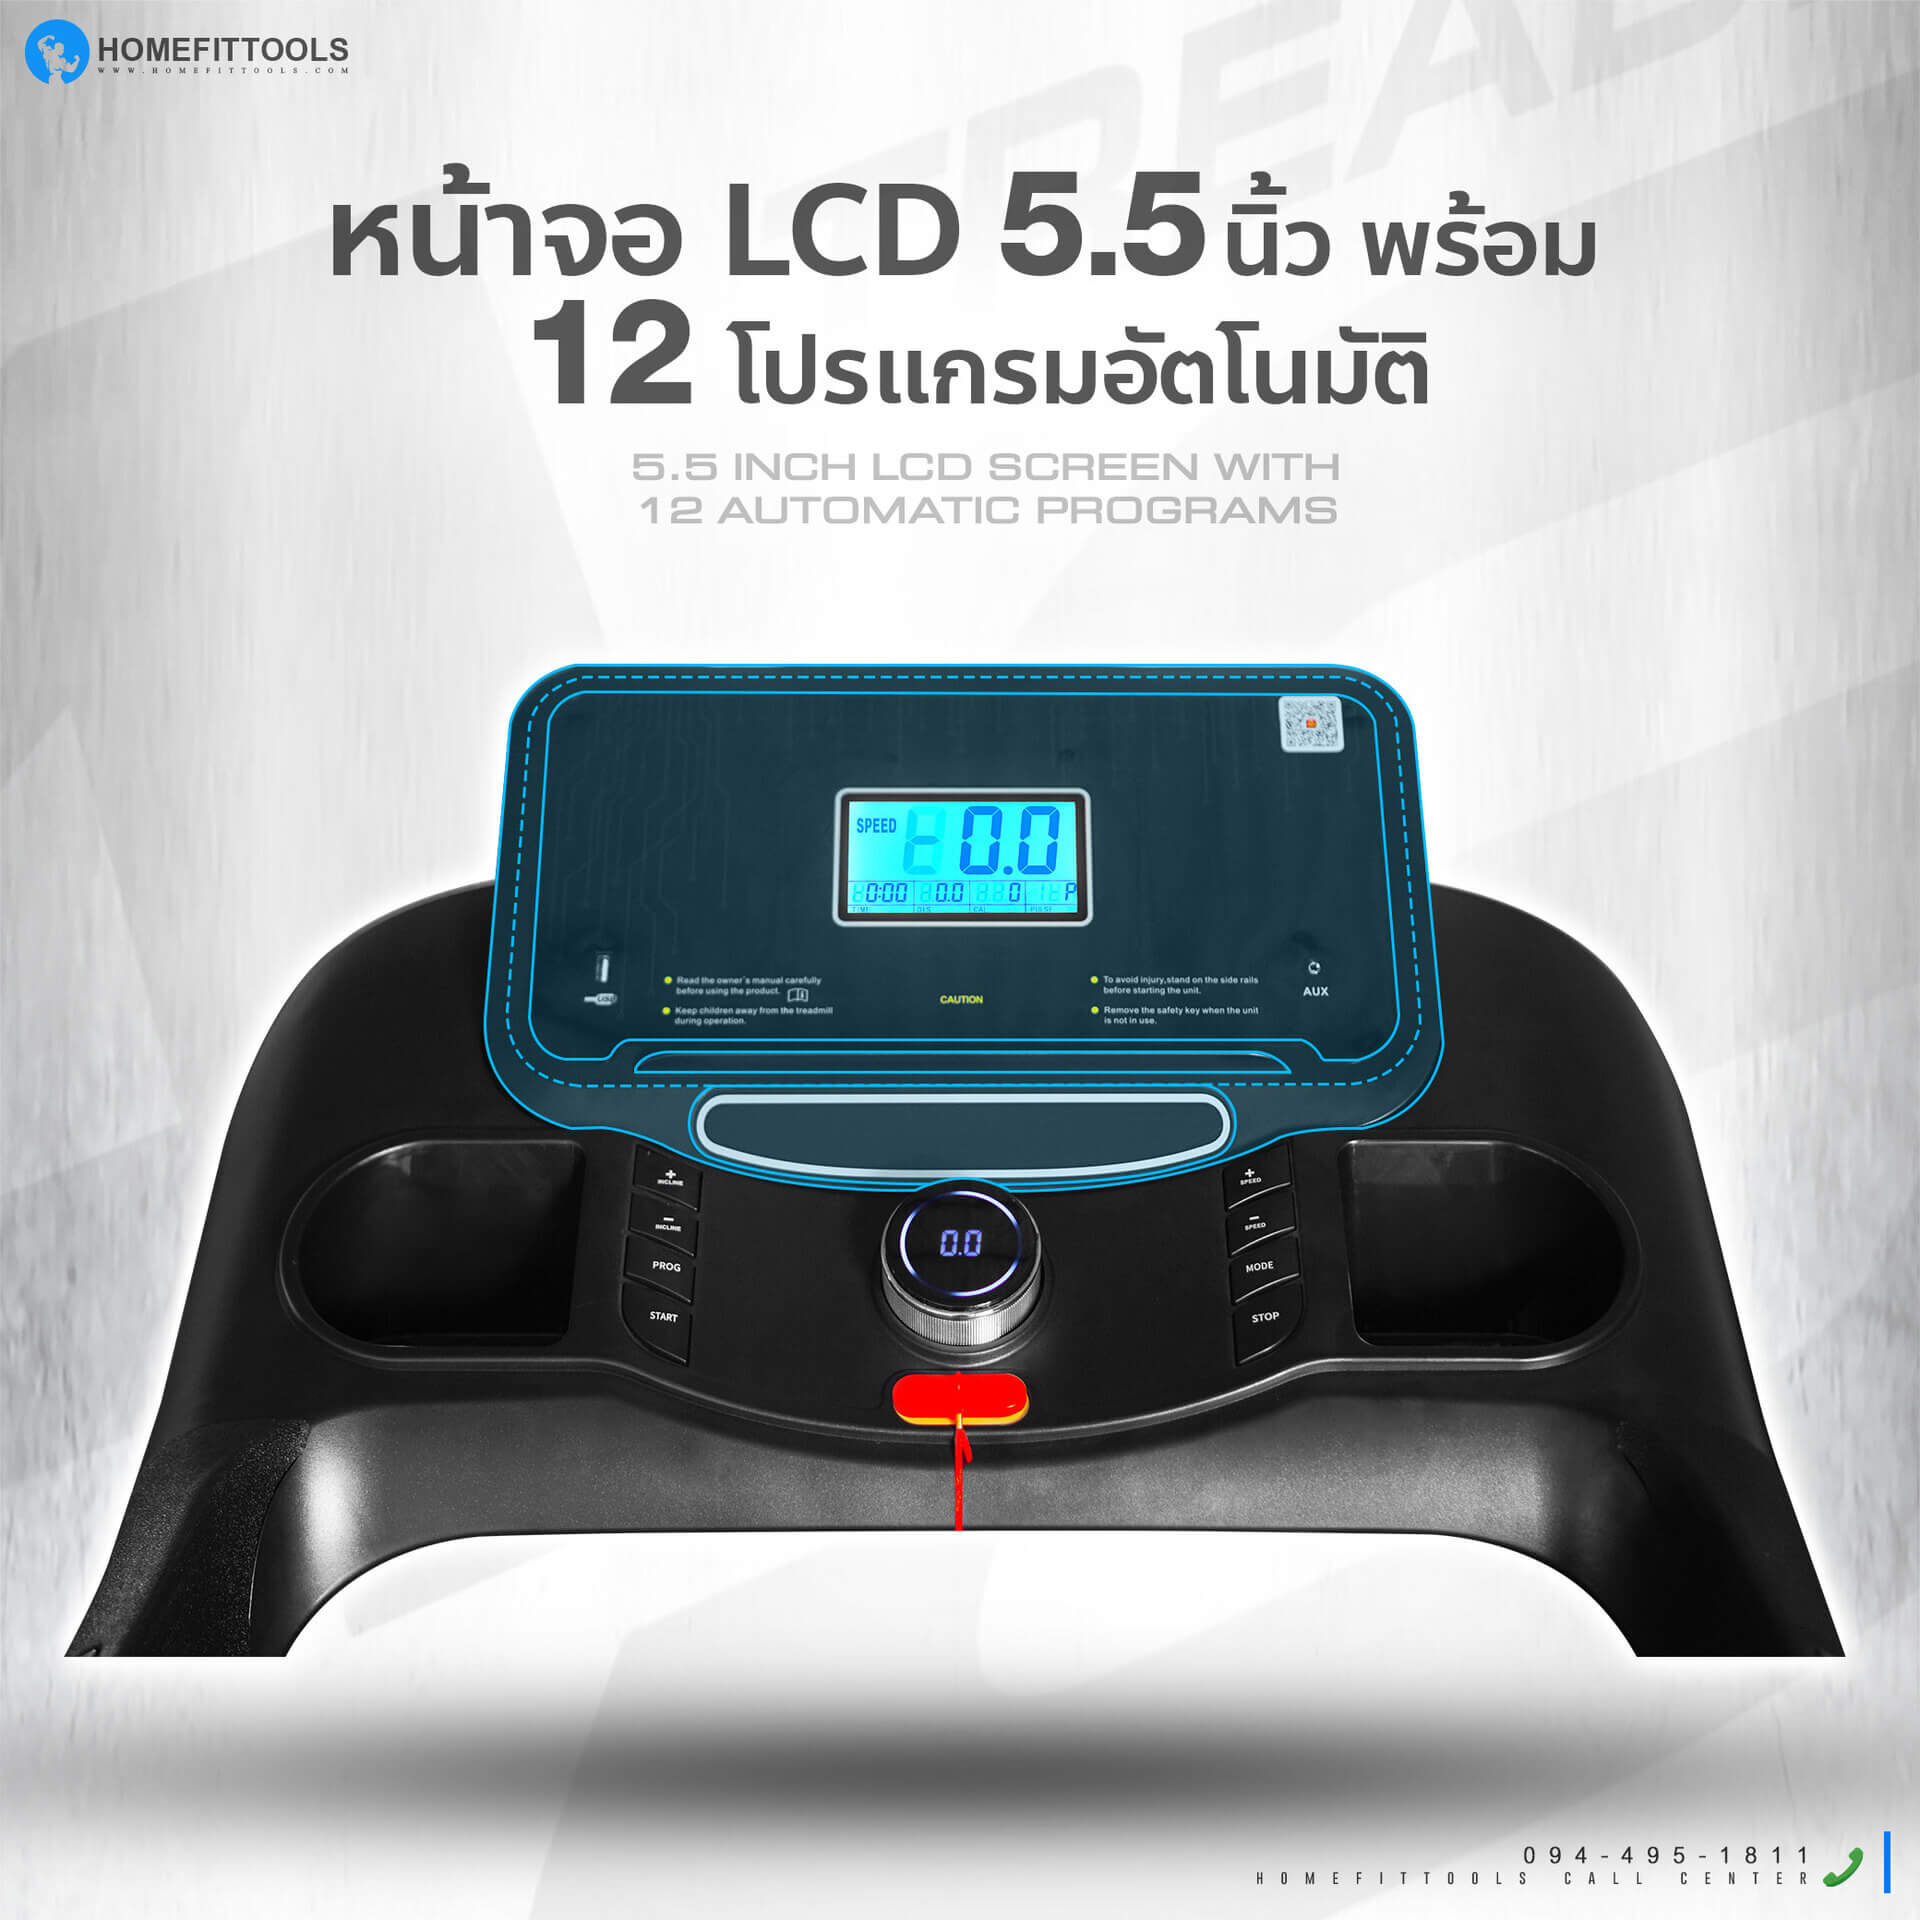 หน้าจอ LCD 5.5 นิ้ว ลู่วิ่งไฟฟ้า รุ่น A3